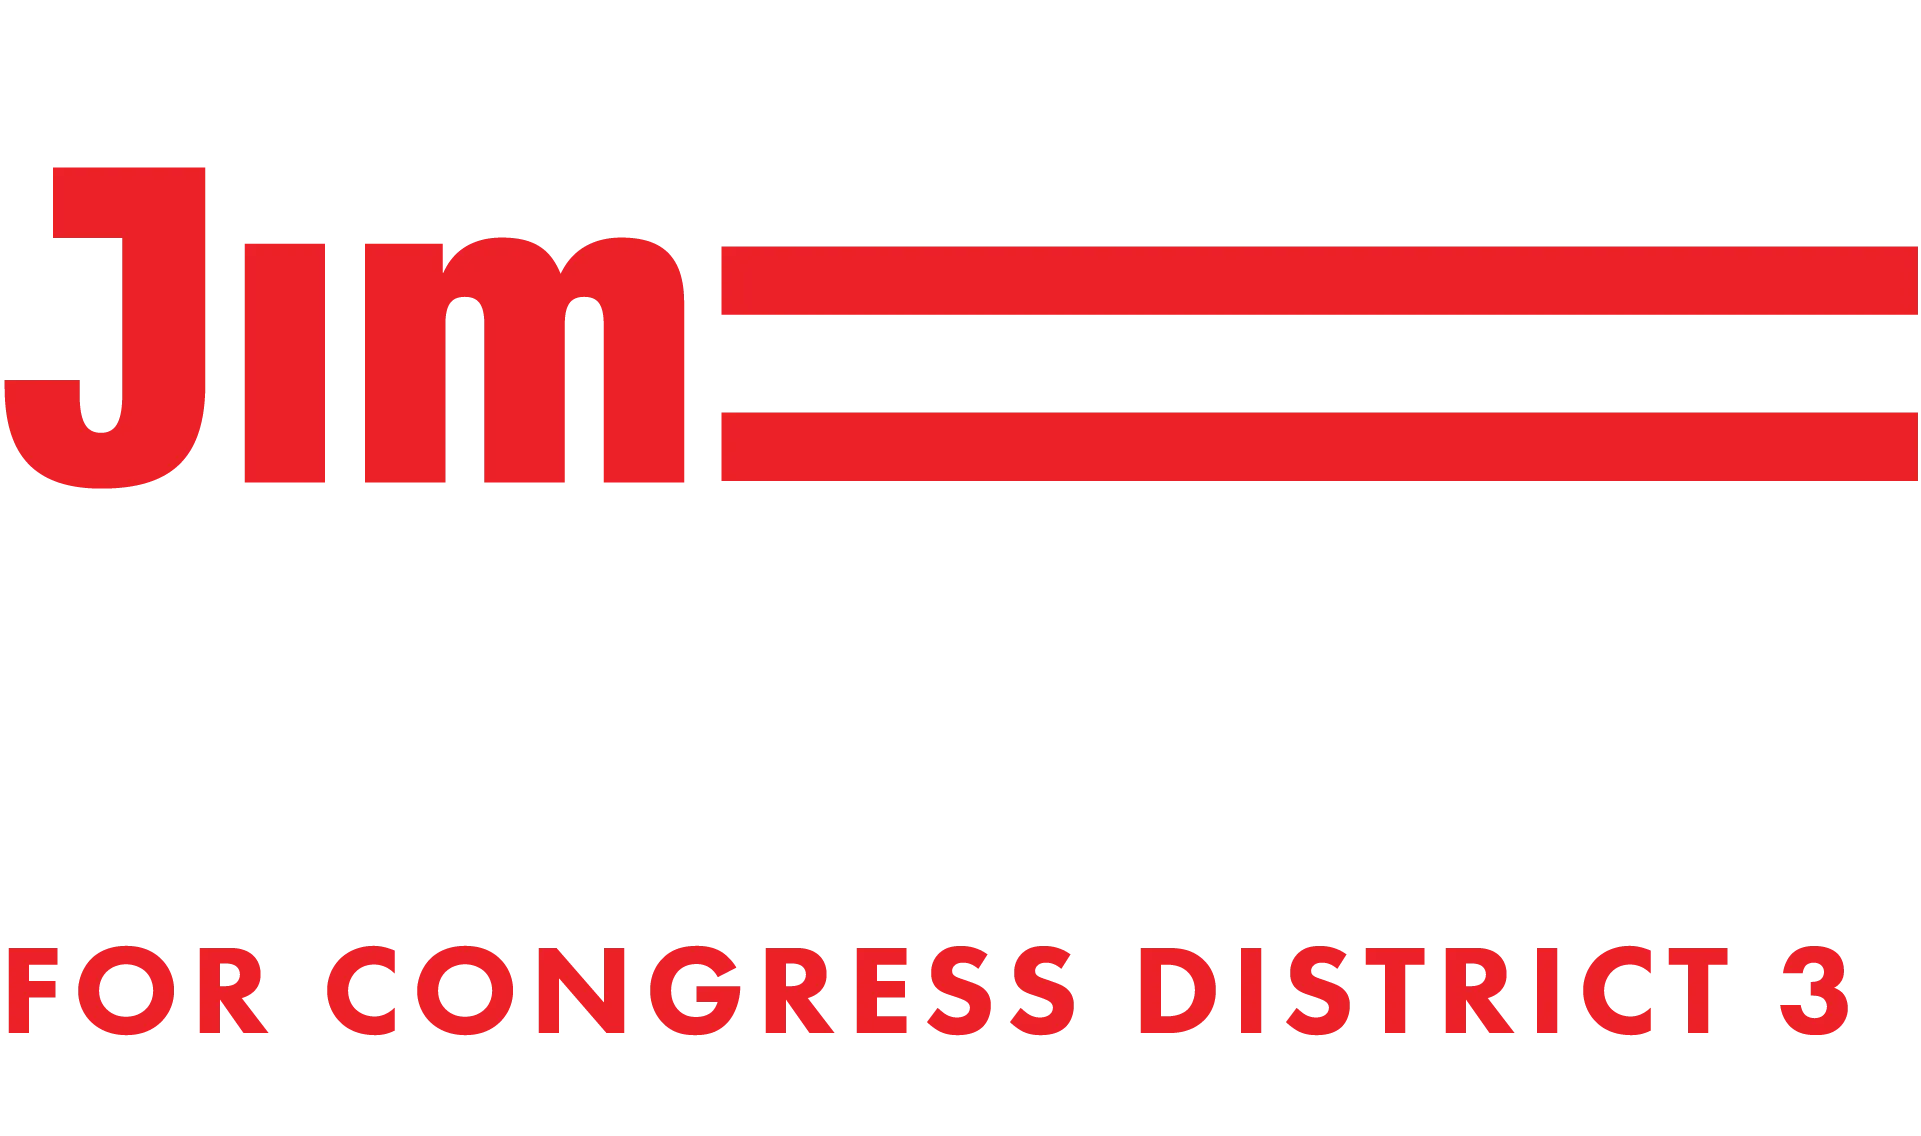 Jim Bennett for U.S. Congress